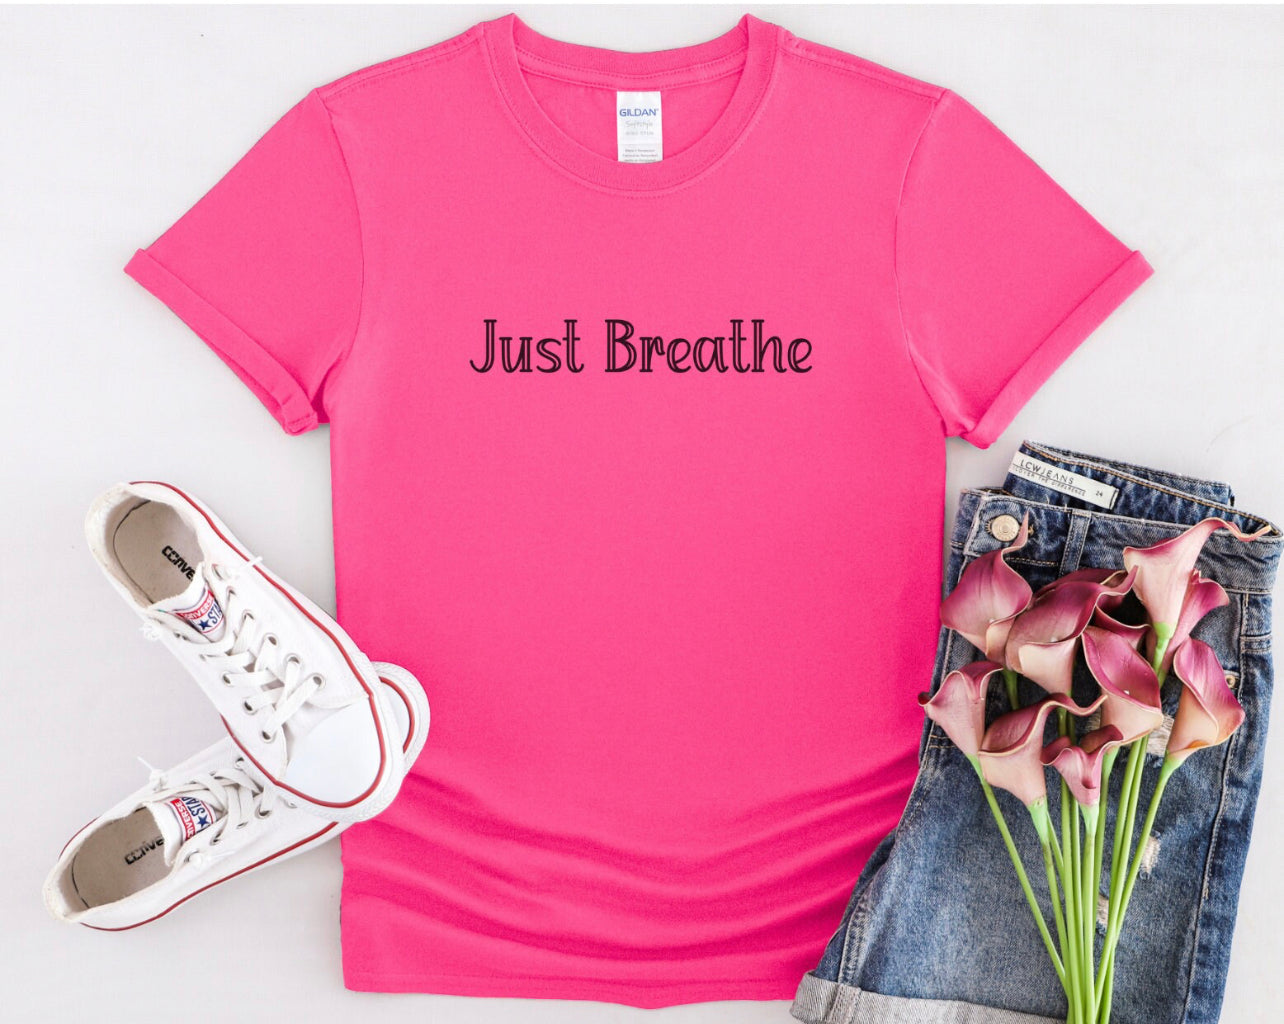 Just Breathe Motivational T-Shirt, Positive Shirt, Meditation Tee, Mindfulness Shirt